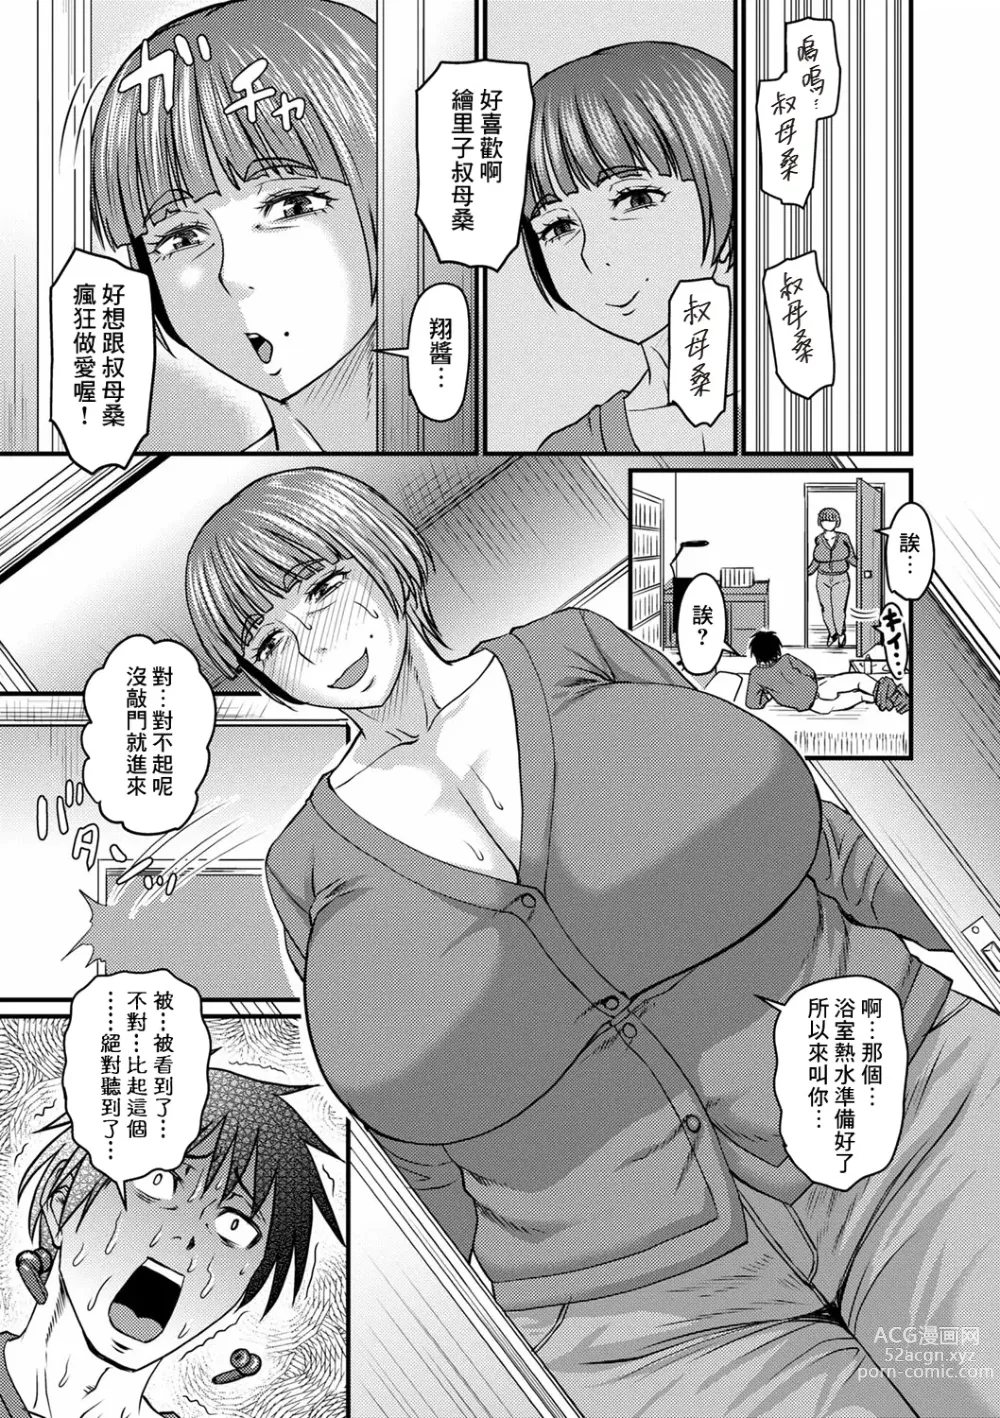 Page 5 of manga Obasan to Futarigurashi